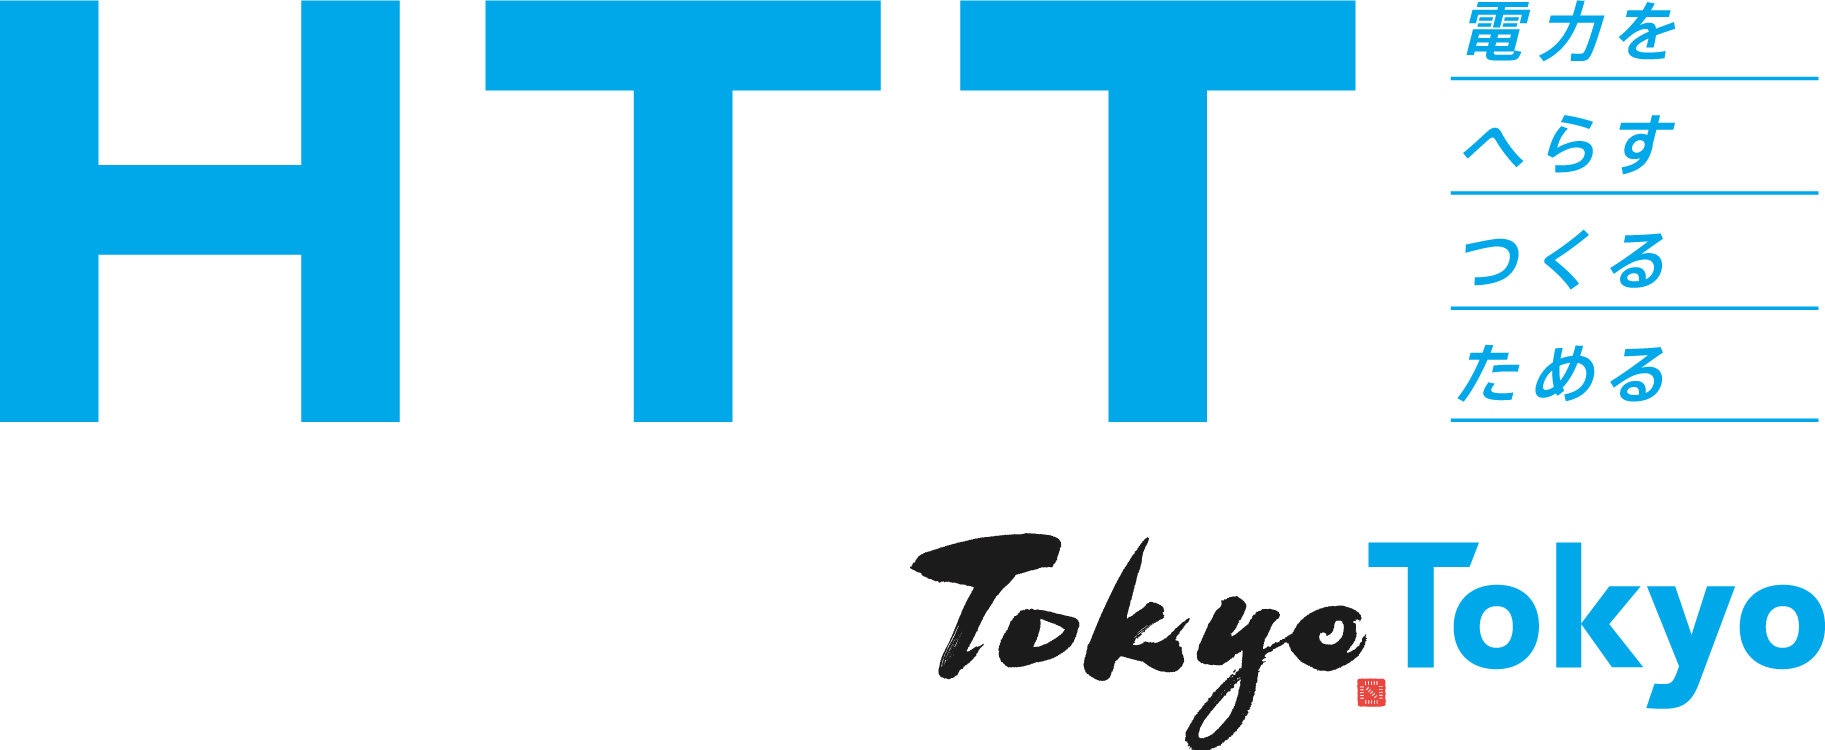 HTT_logo_S.jpg